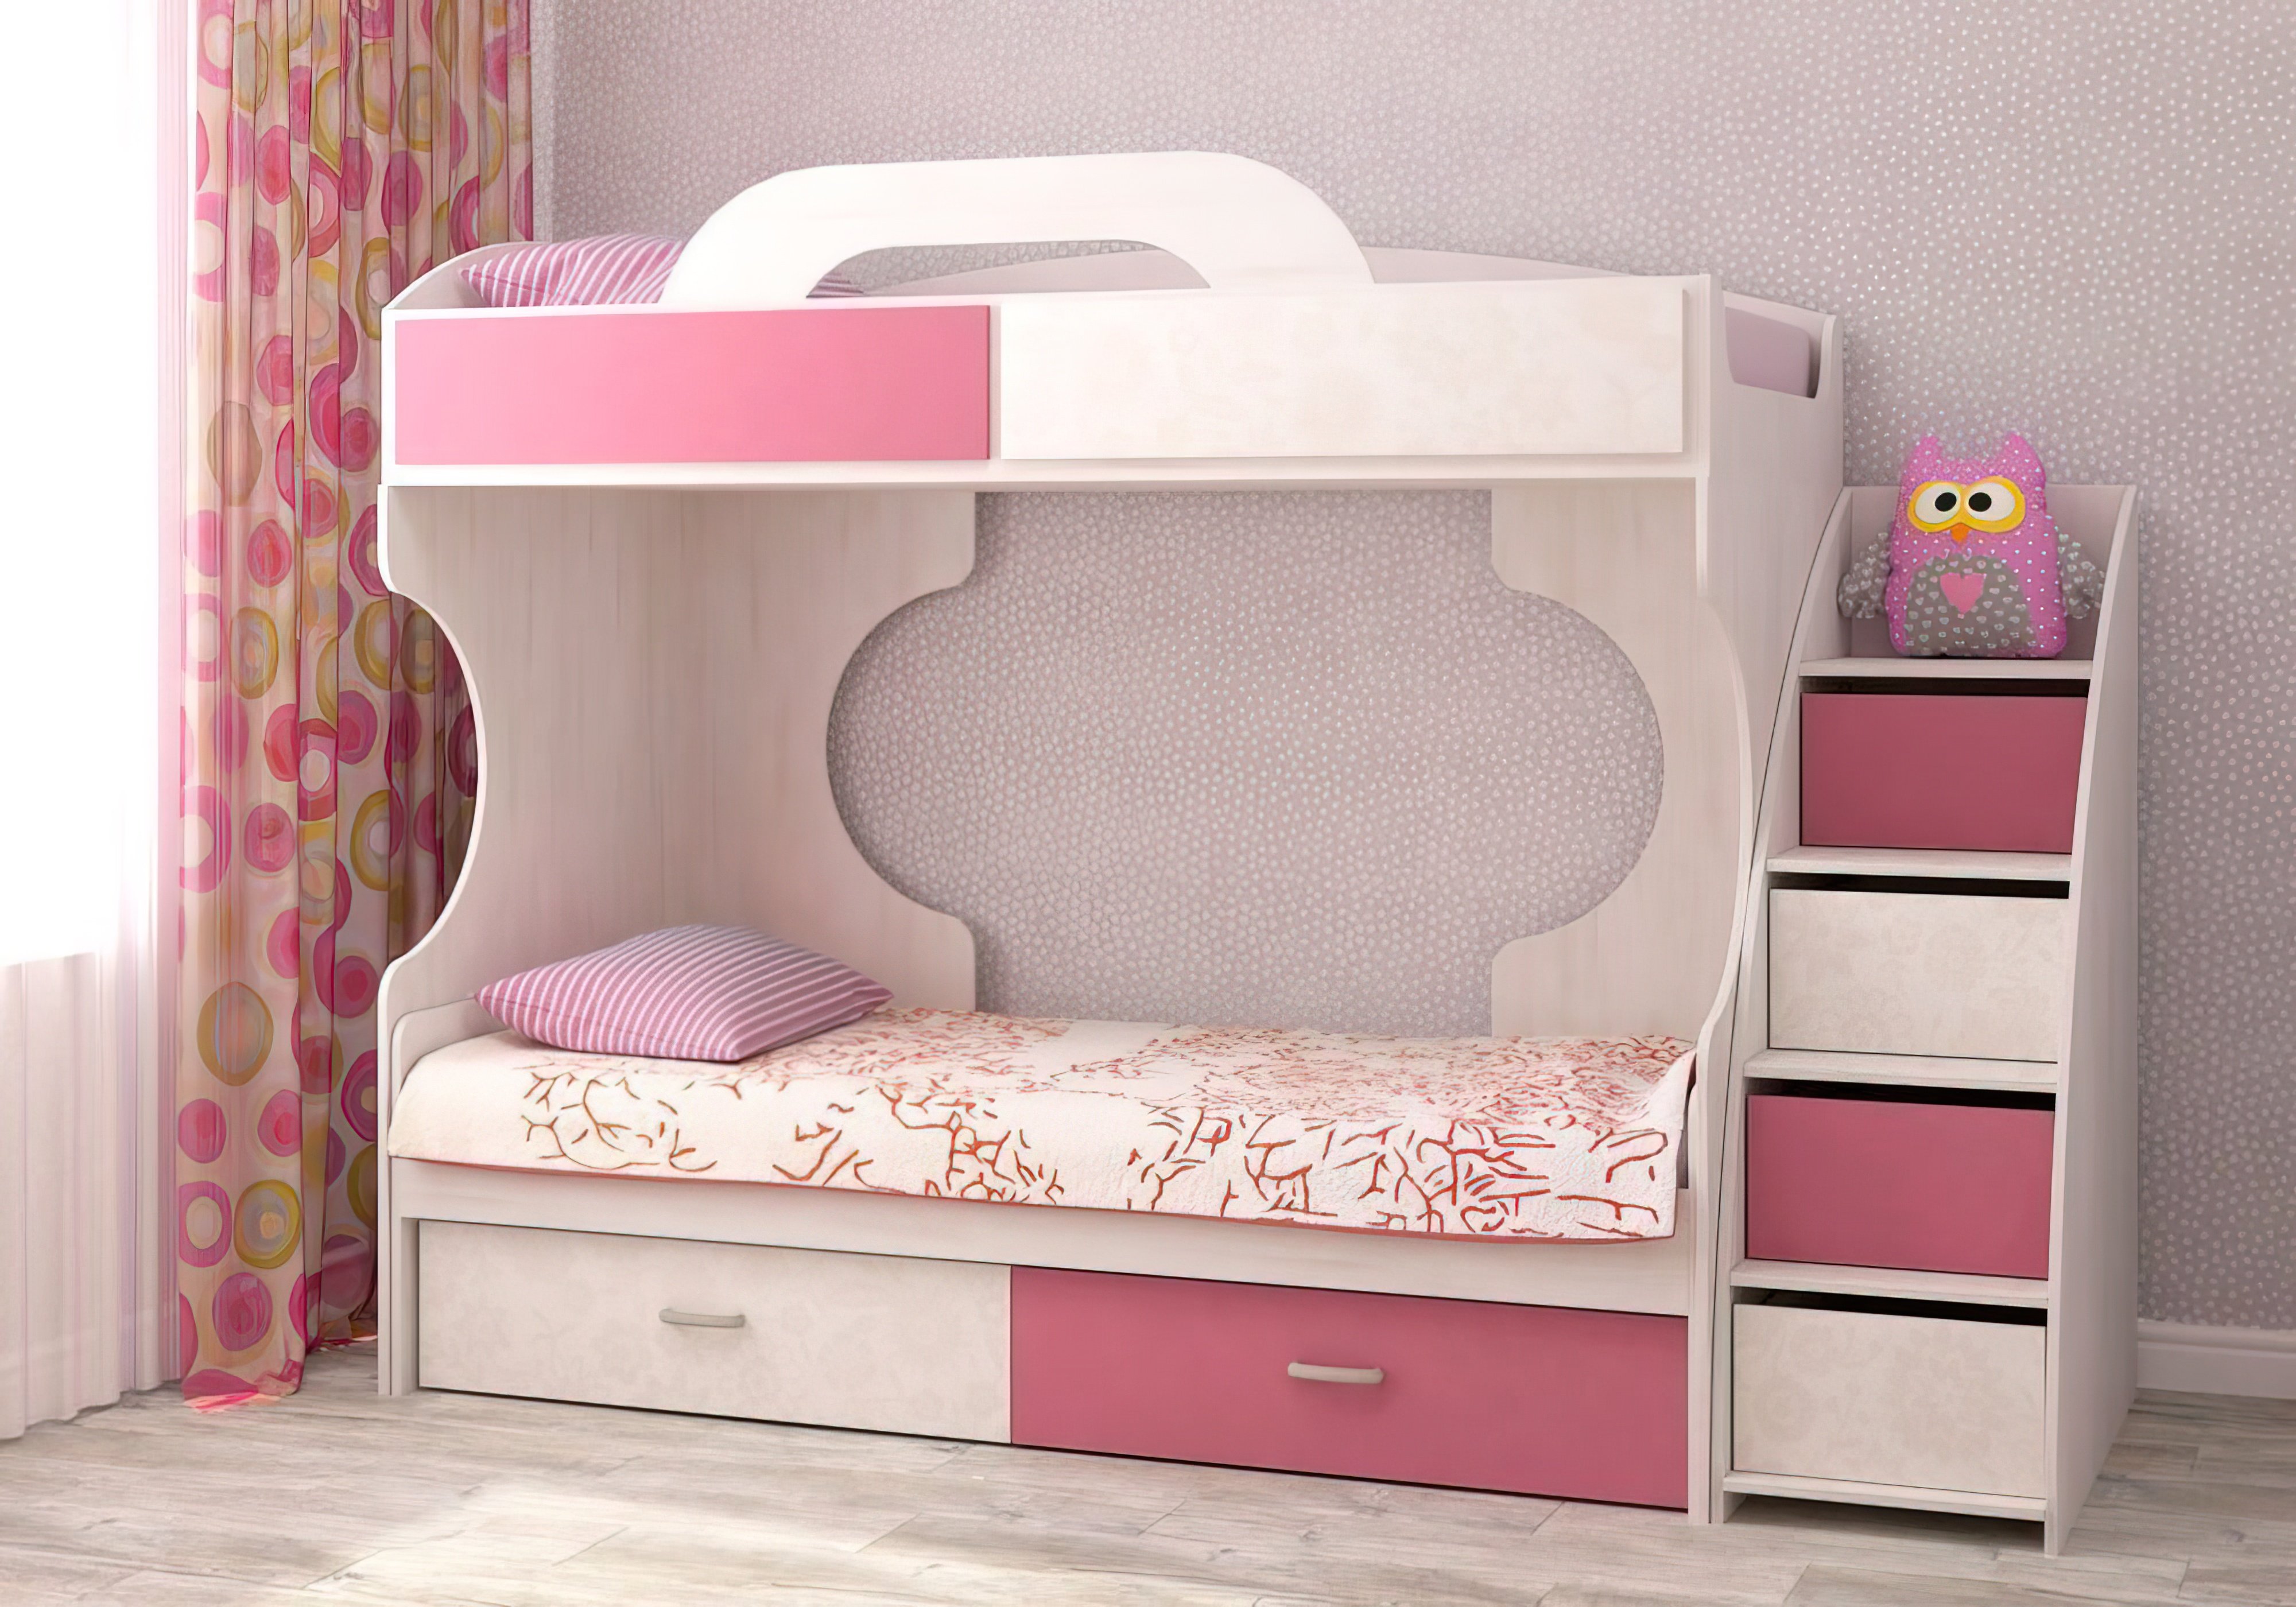  Купить Детские кровати Двухъярусная кровать "Dori Rose" Аззаре